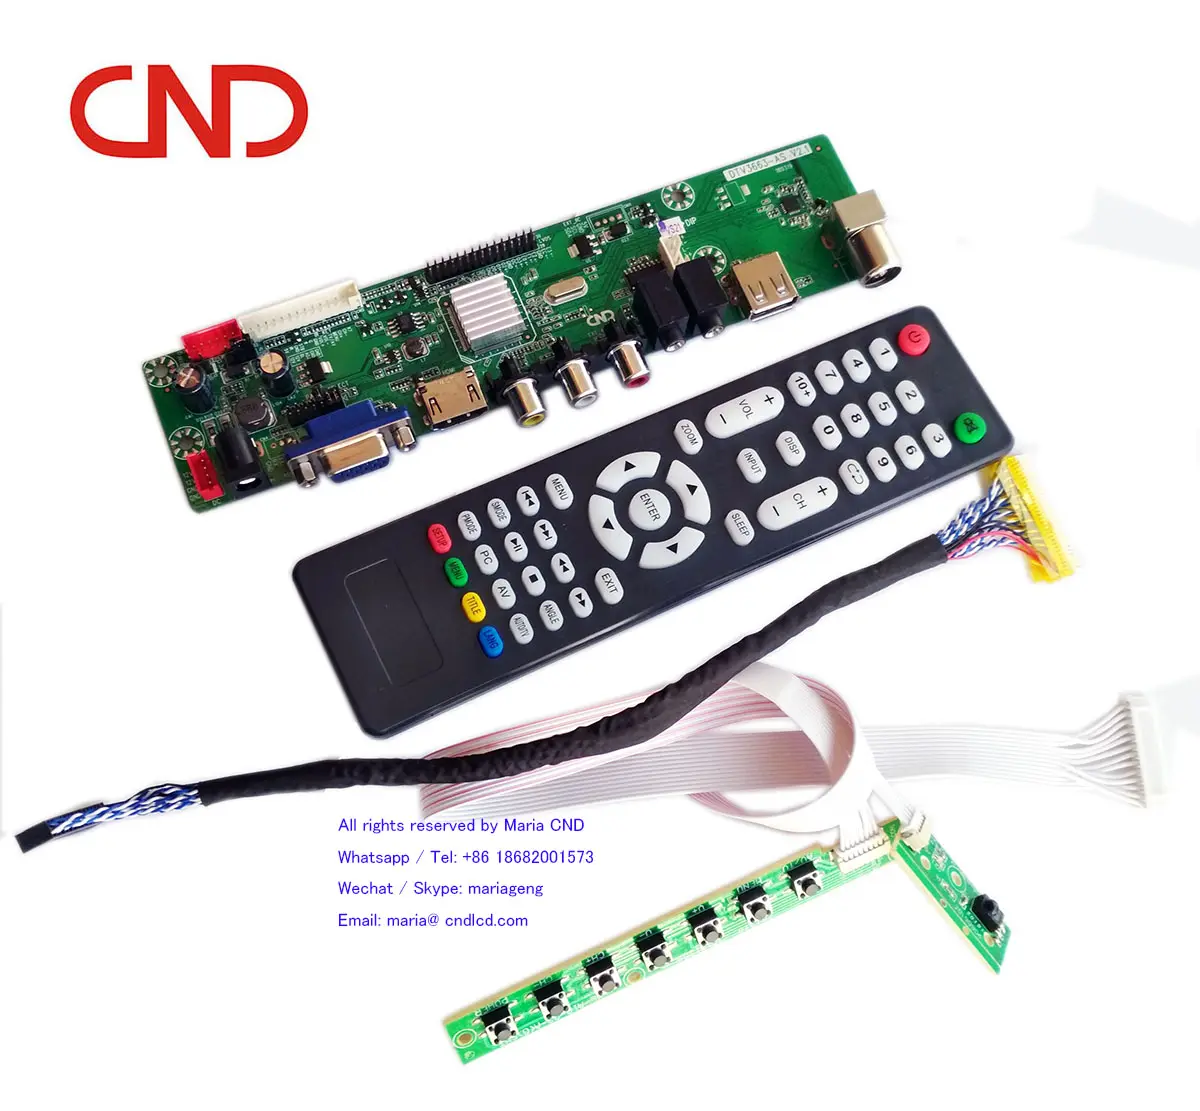 CND Universal Samsung TV espaÃ a V56 V59 SKD kits LED TV Jumper de la placa base de la tarjeta